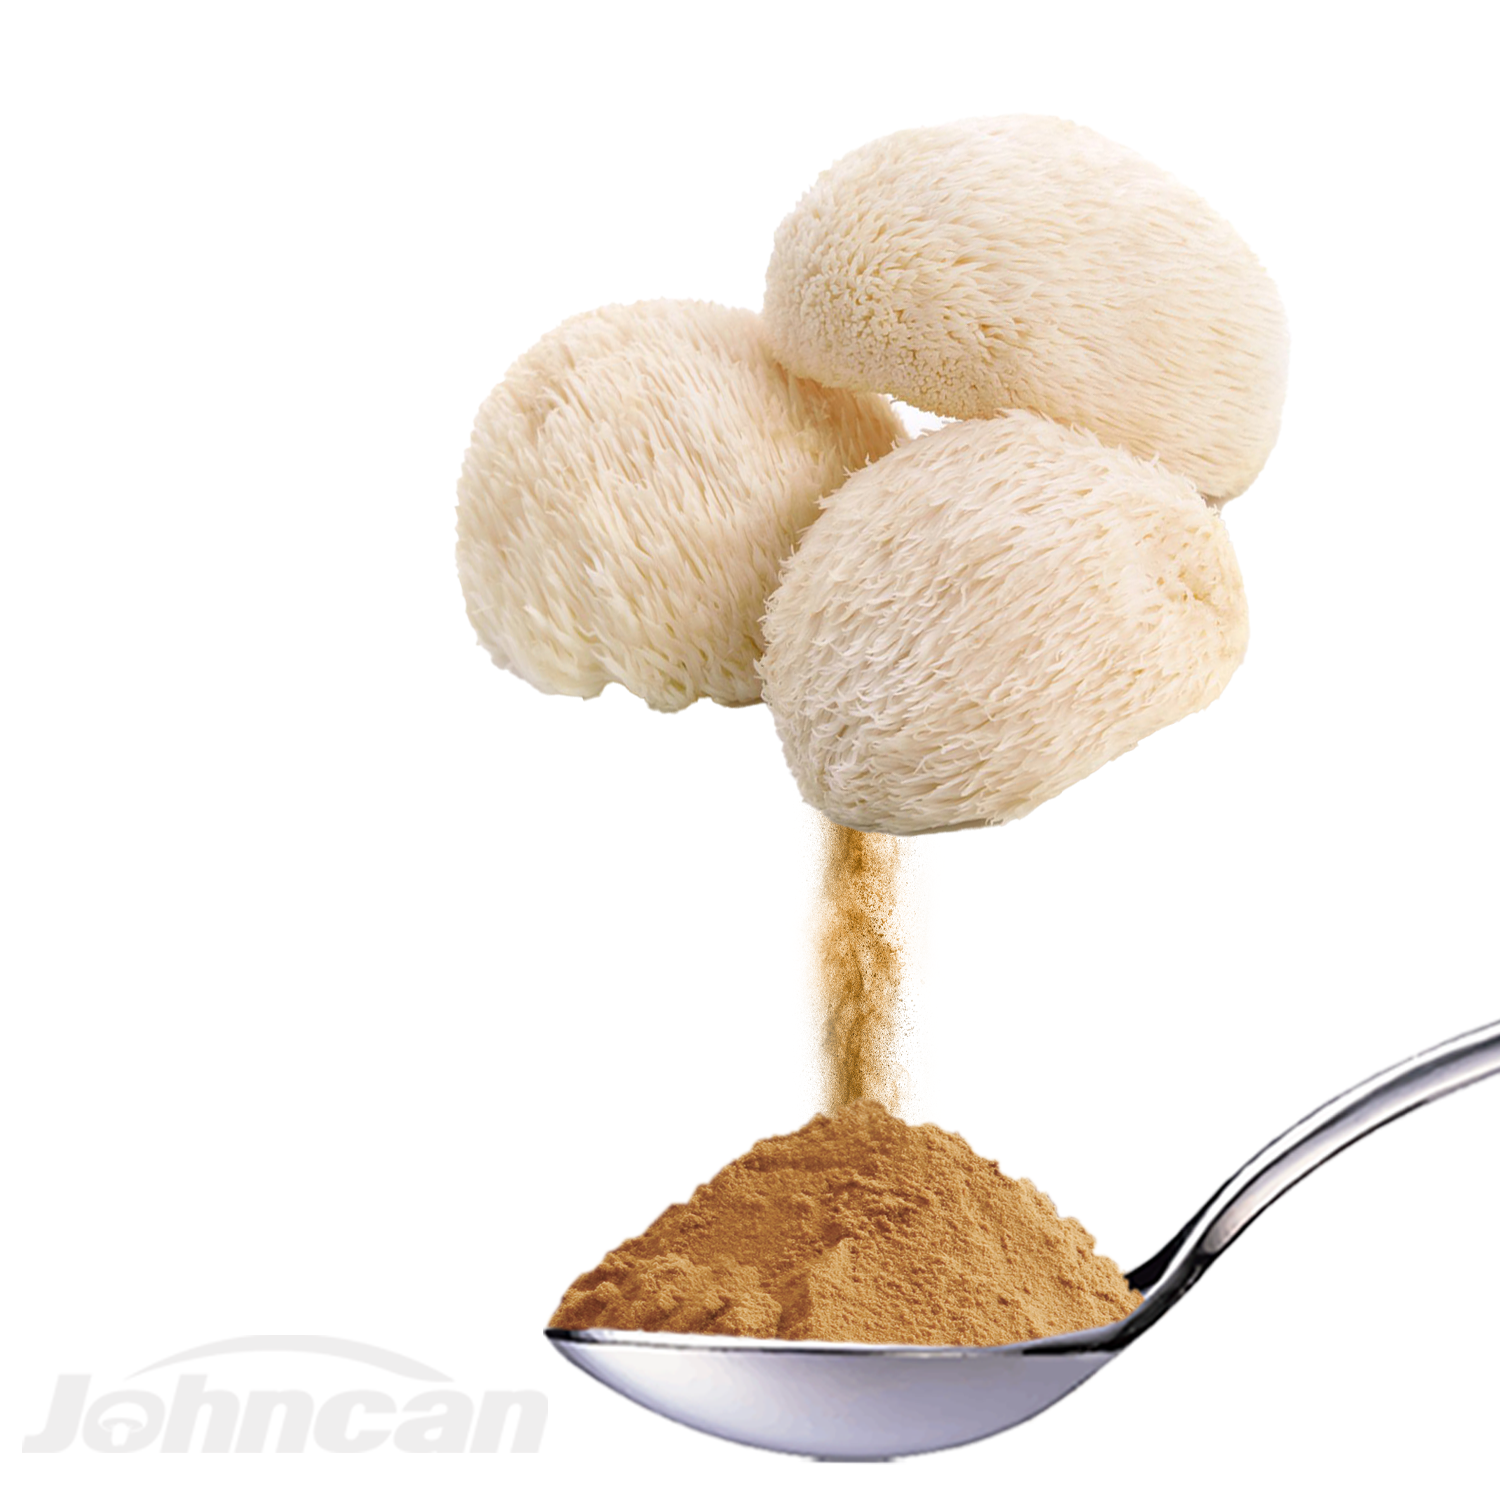 Factory Offer Private Label Herbal Mushroom Extract Powder Lion’s Mane, Hericium Erinaceus